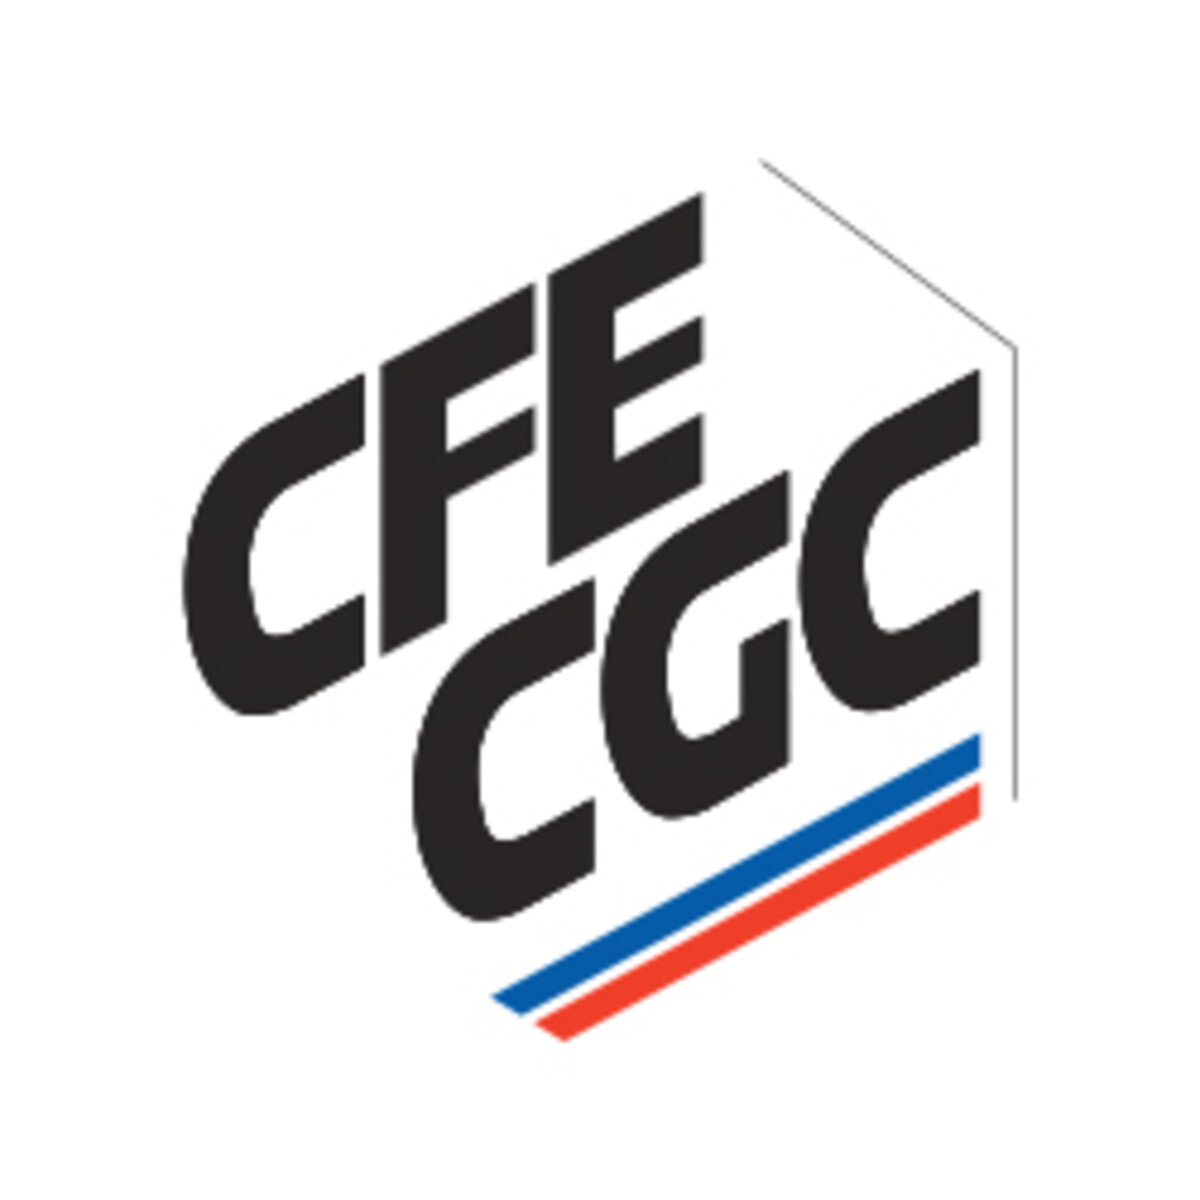 (c) Cfecgc.org